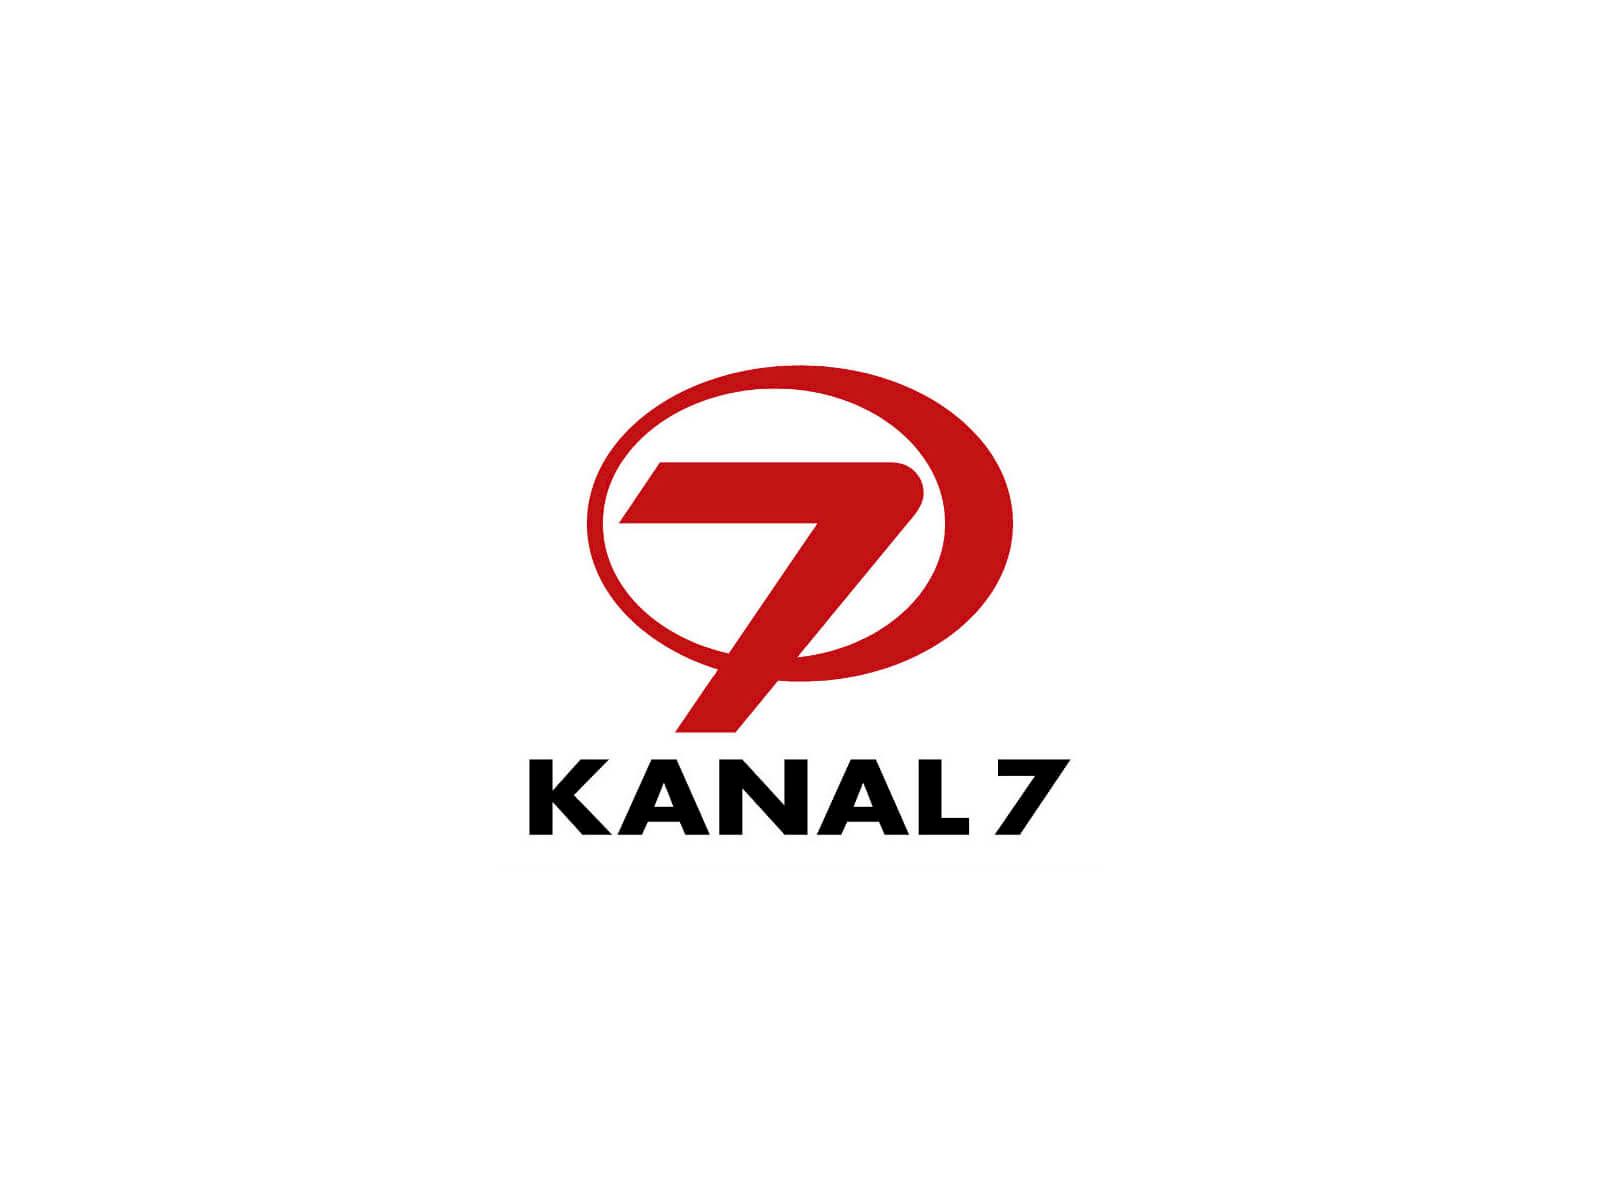 Kanal 7 canlı yayın izle. 7 Канал. 7 Канал логотип. Канал d Canli. Logos kanal Azerbaijan.